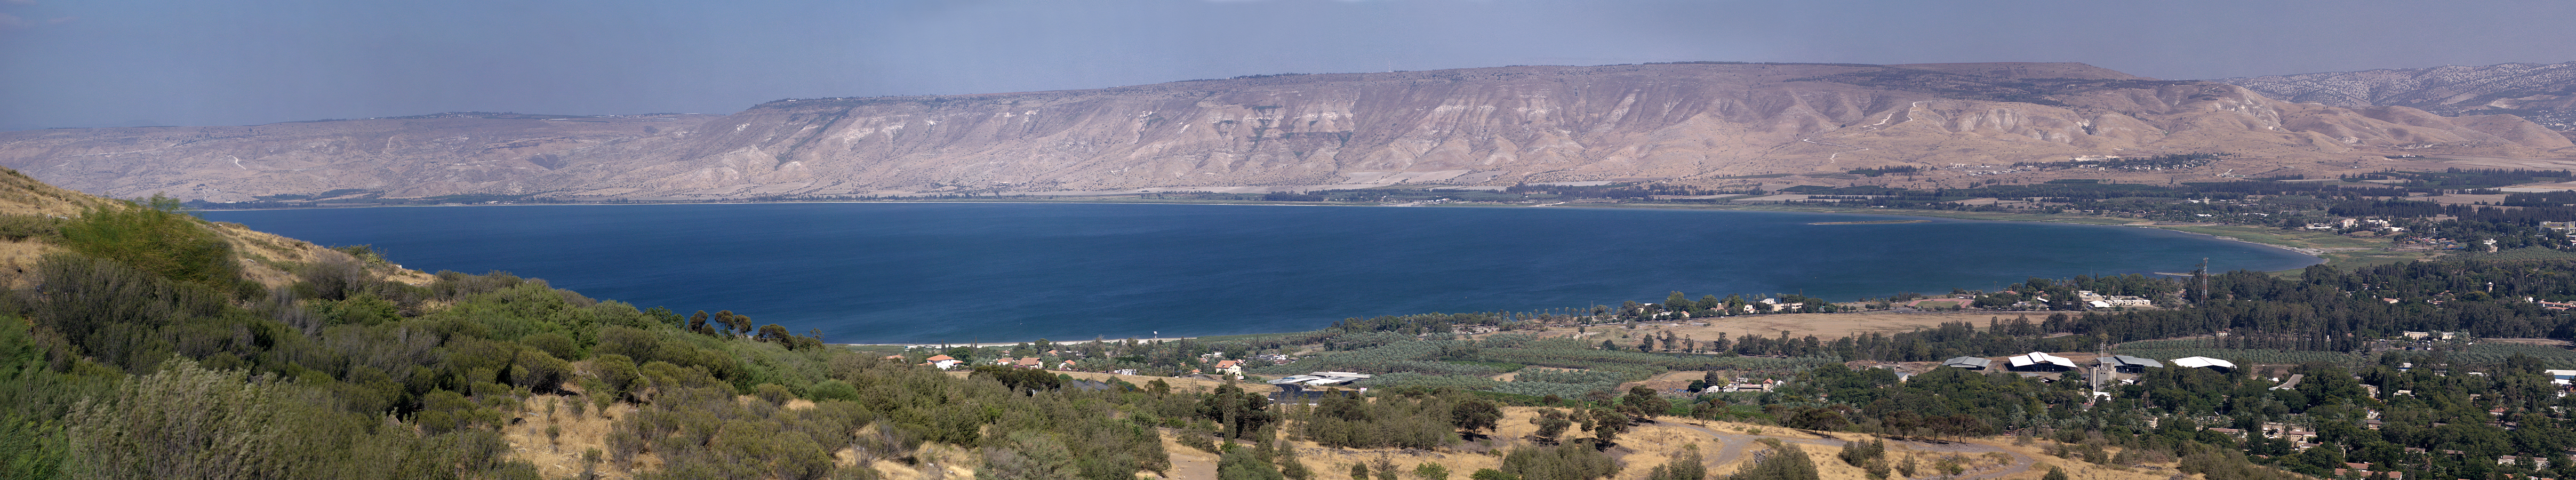 Иордан озера Генисаретское